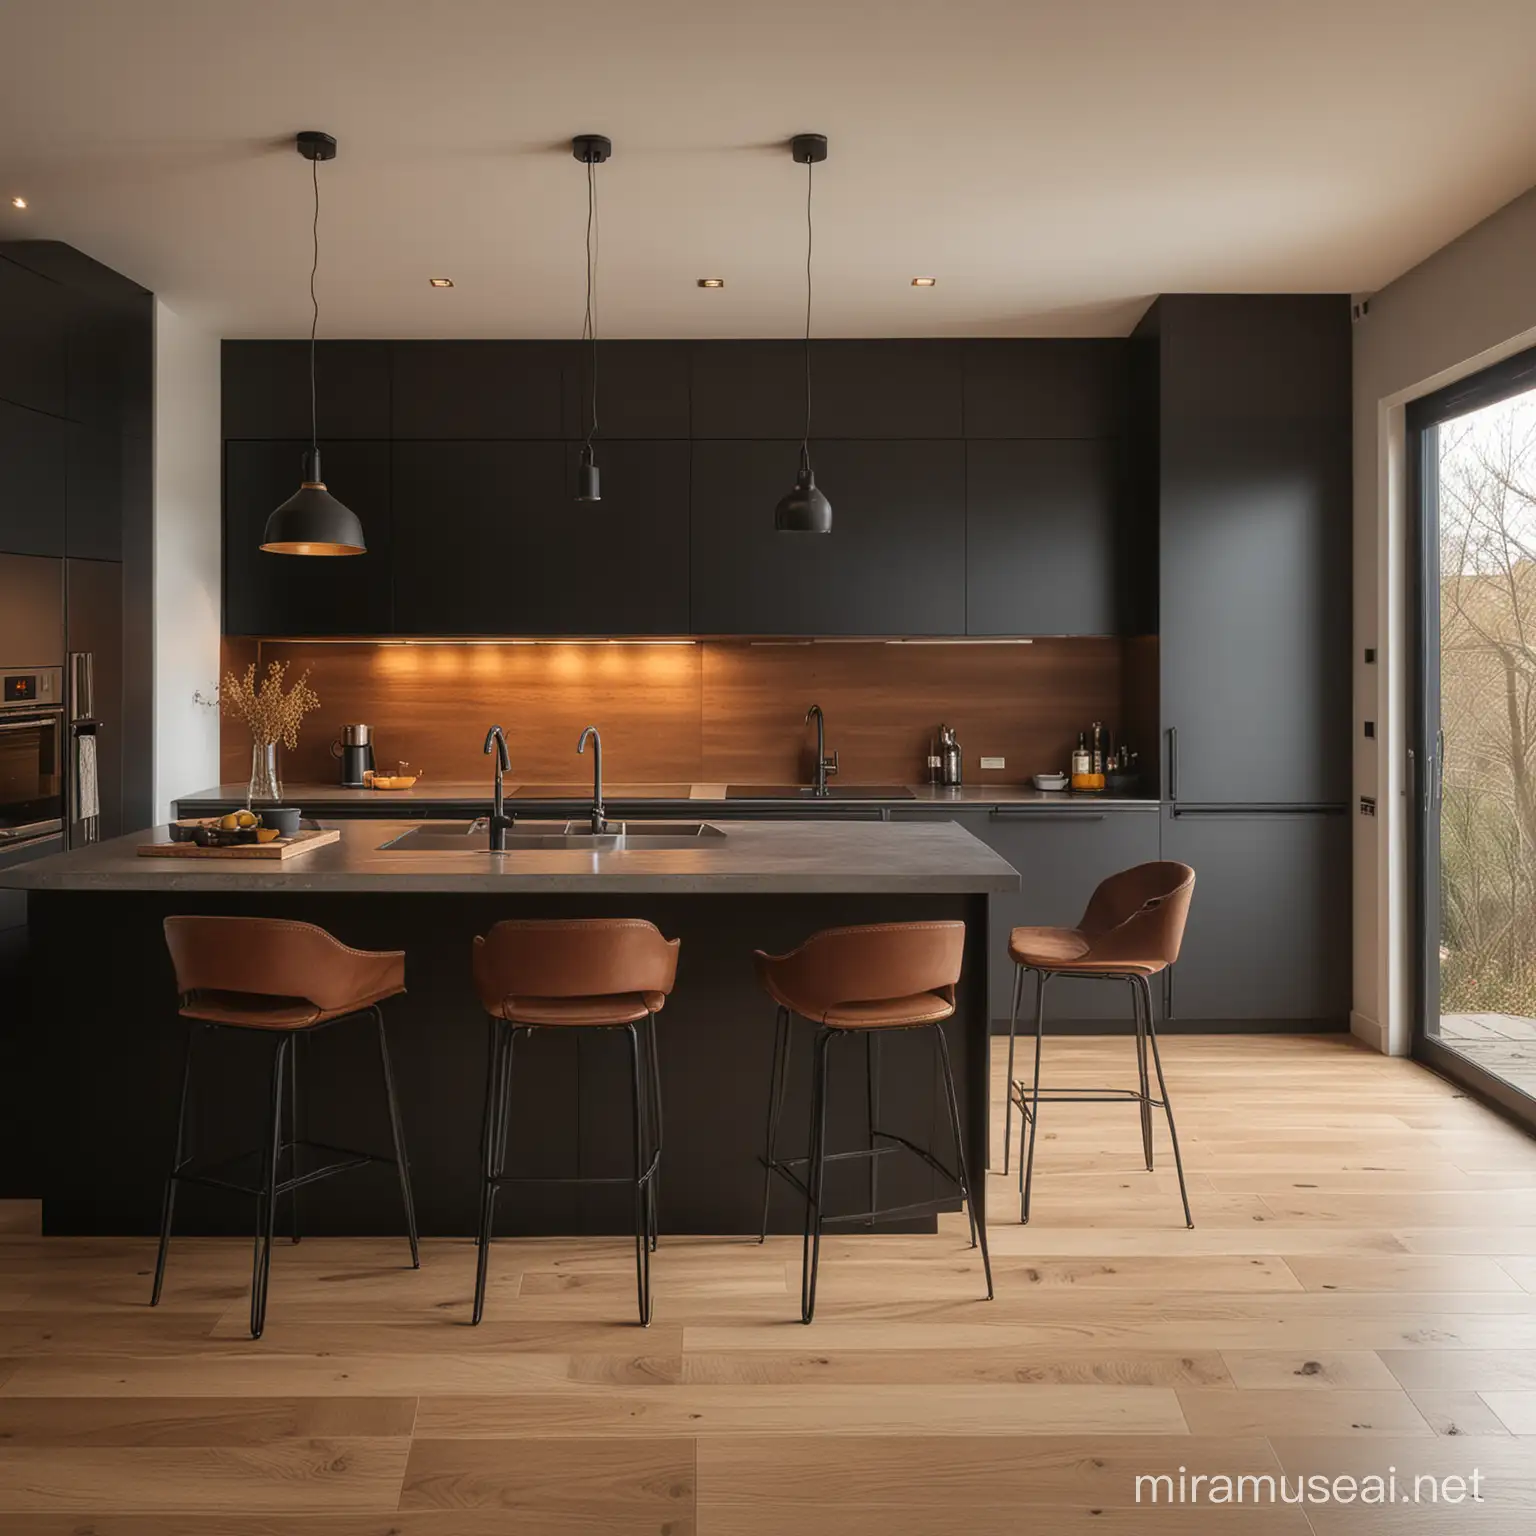 black, brown, grey modern kitchen,warm light